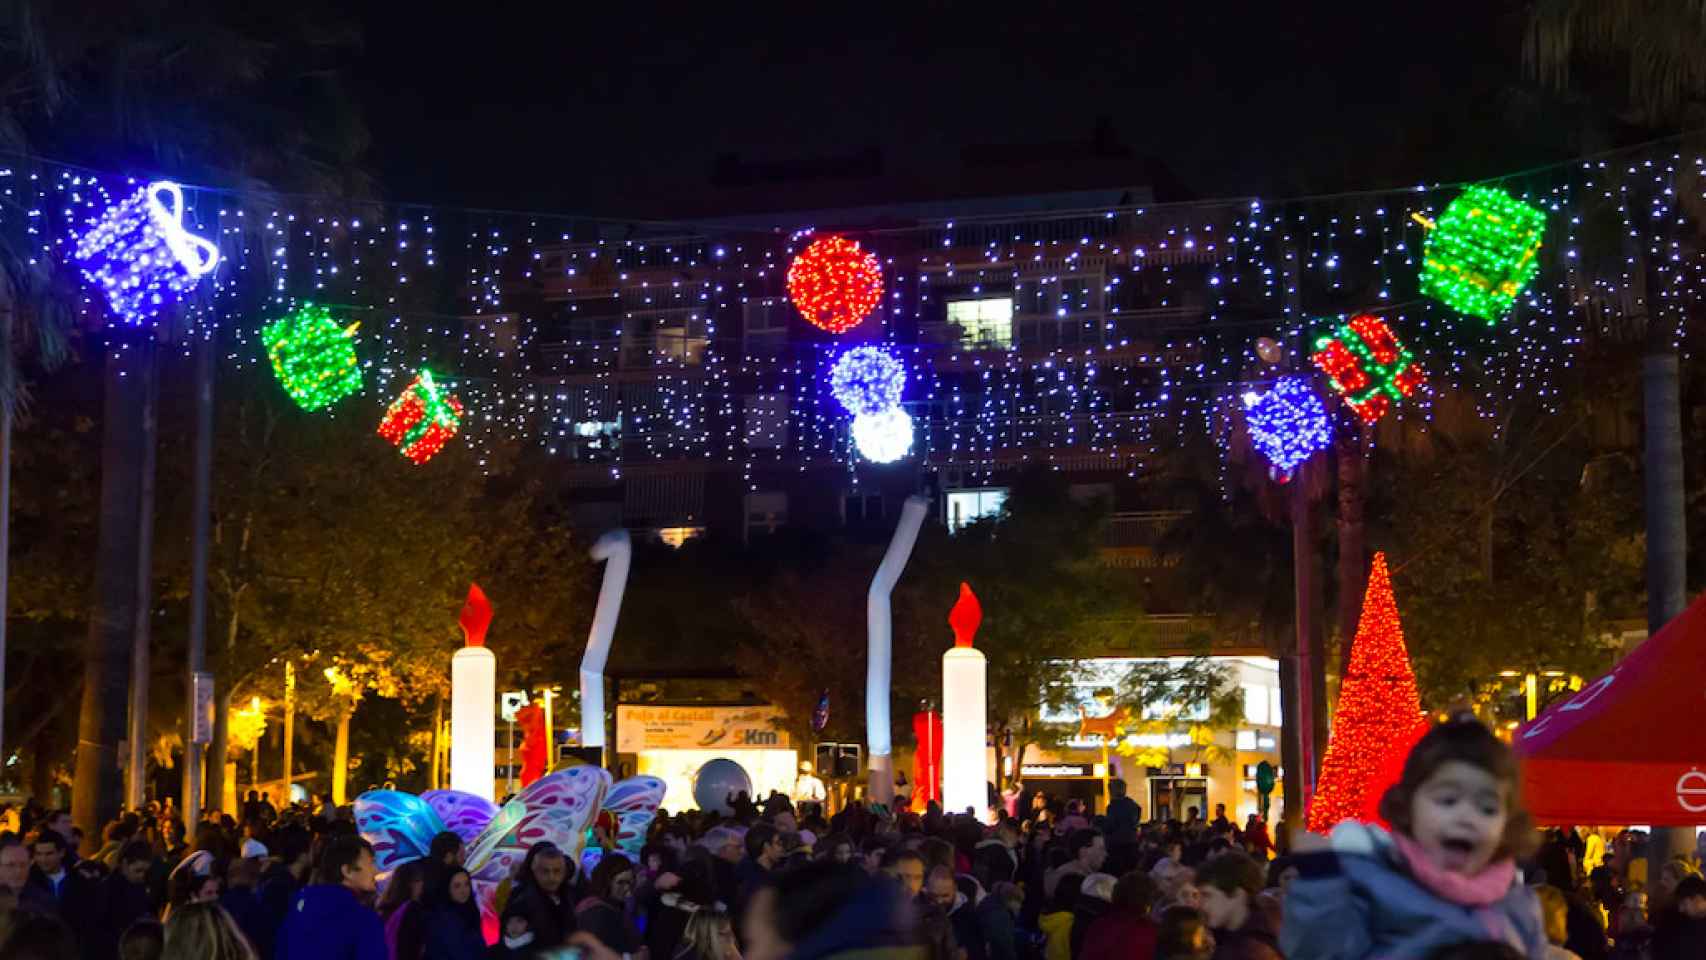 Luces de Navidad en las calles de Castelldefels en años anteriores